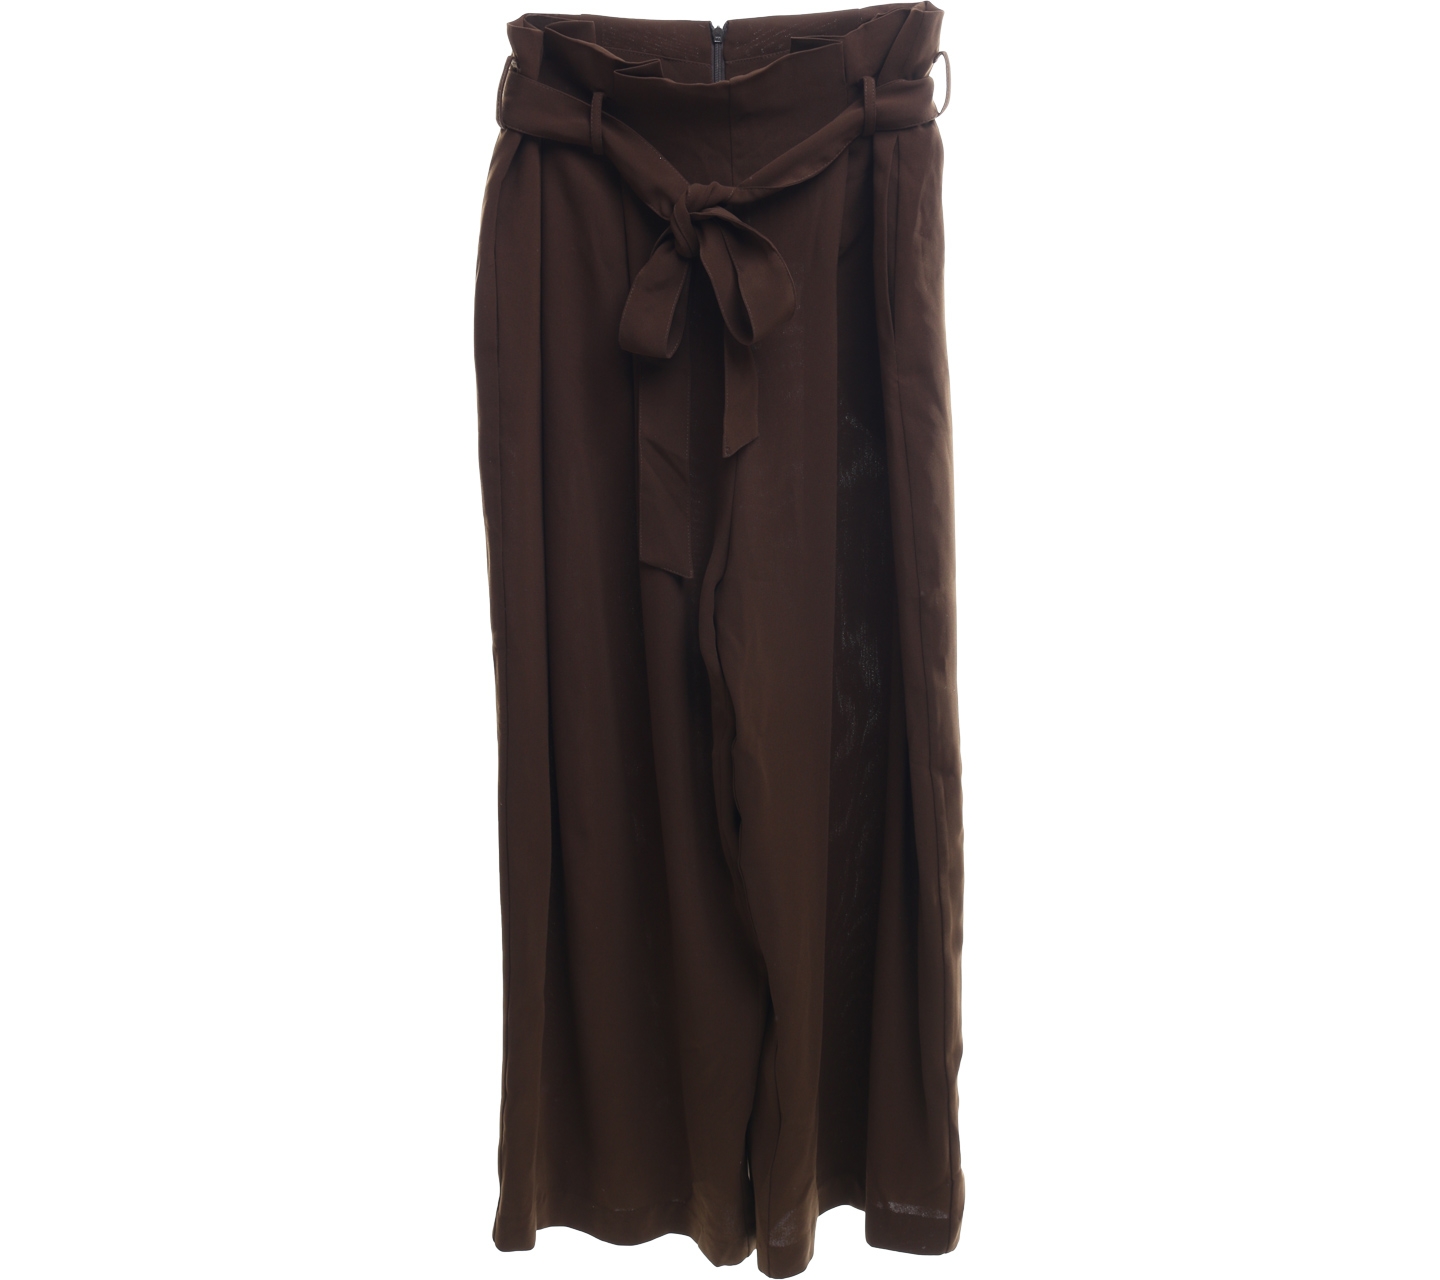 Indibrand Dark Brown Culottes Long Pants